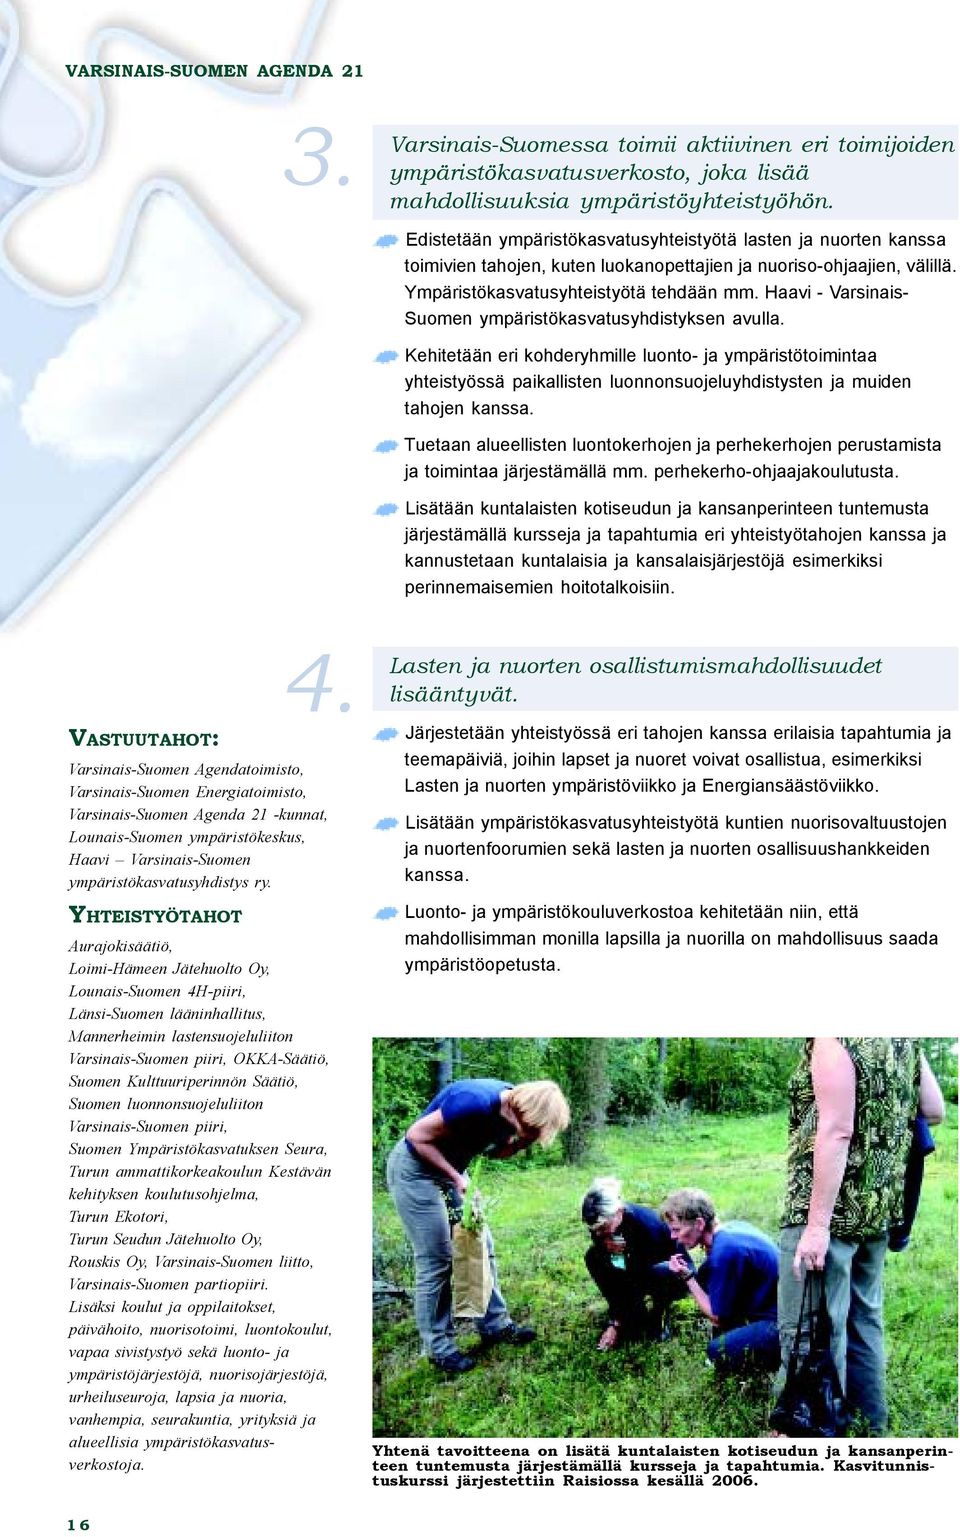 Haavi - Varsinais- Suomen ympäristökasvatusyhdistyksen avulla. Kehitetään eri kohderyhmille luonto- ja ympäristötoimintaa yhteistyössä paikallisten luonnonsuojeluyhdistysten ja muiden tahojen kanssa.